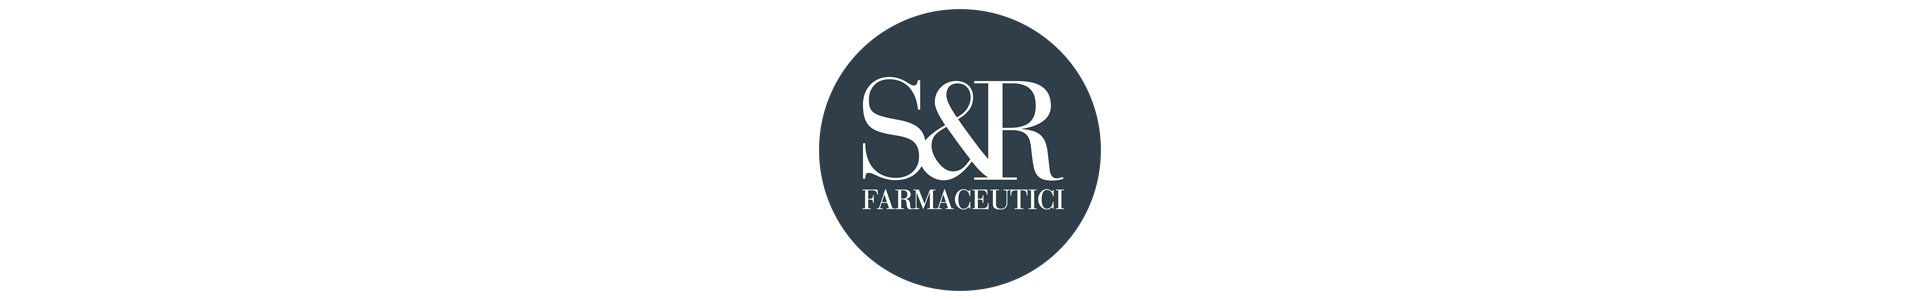 S&R FARMACEUTICI - SILVER